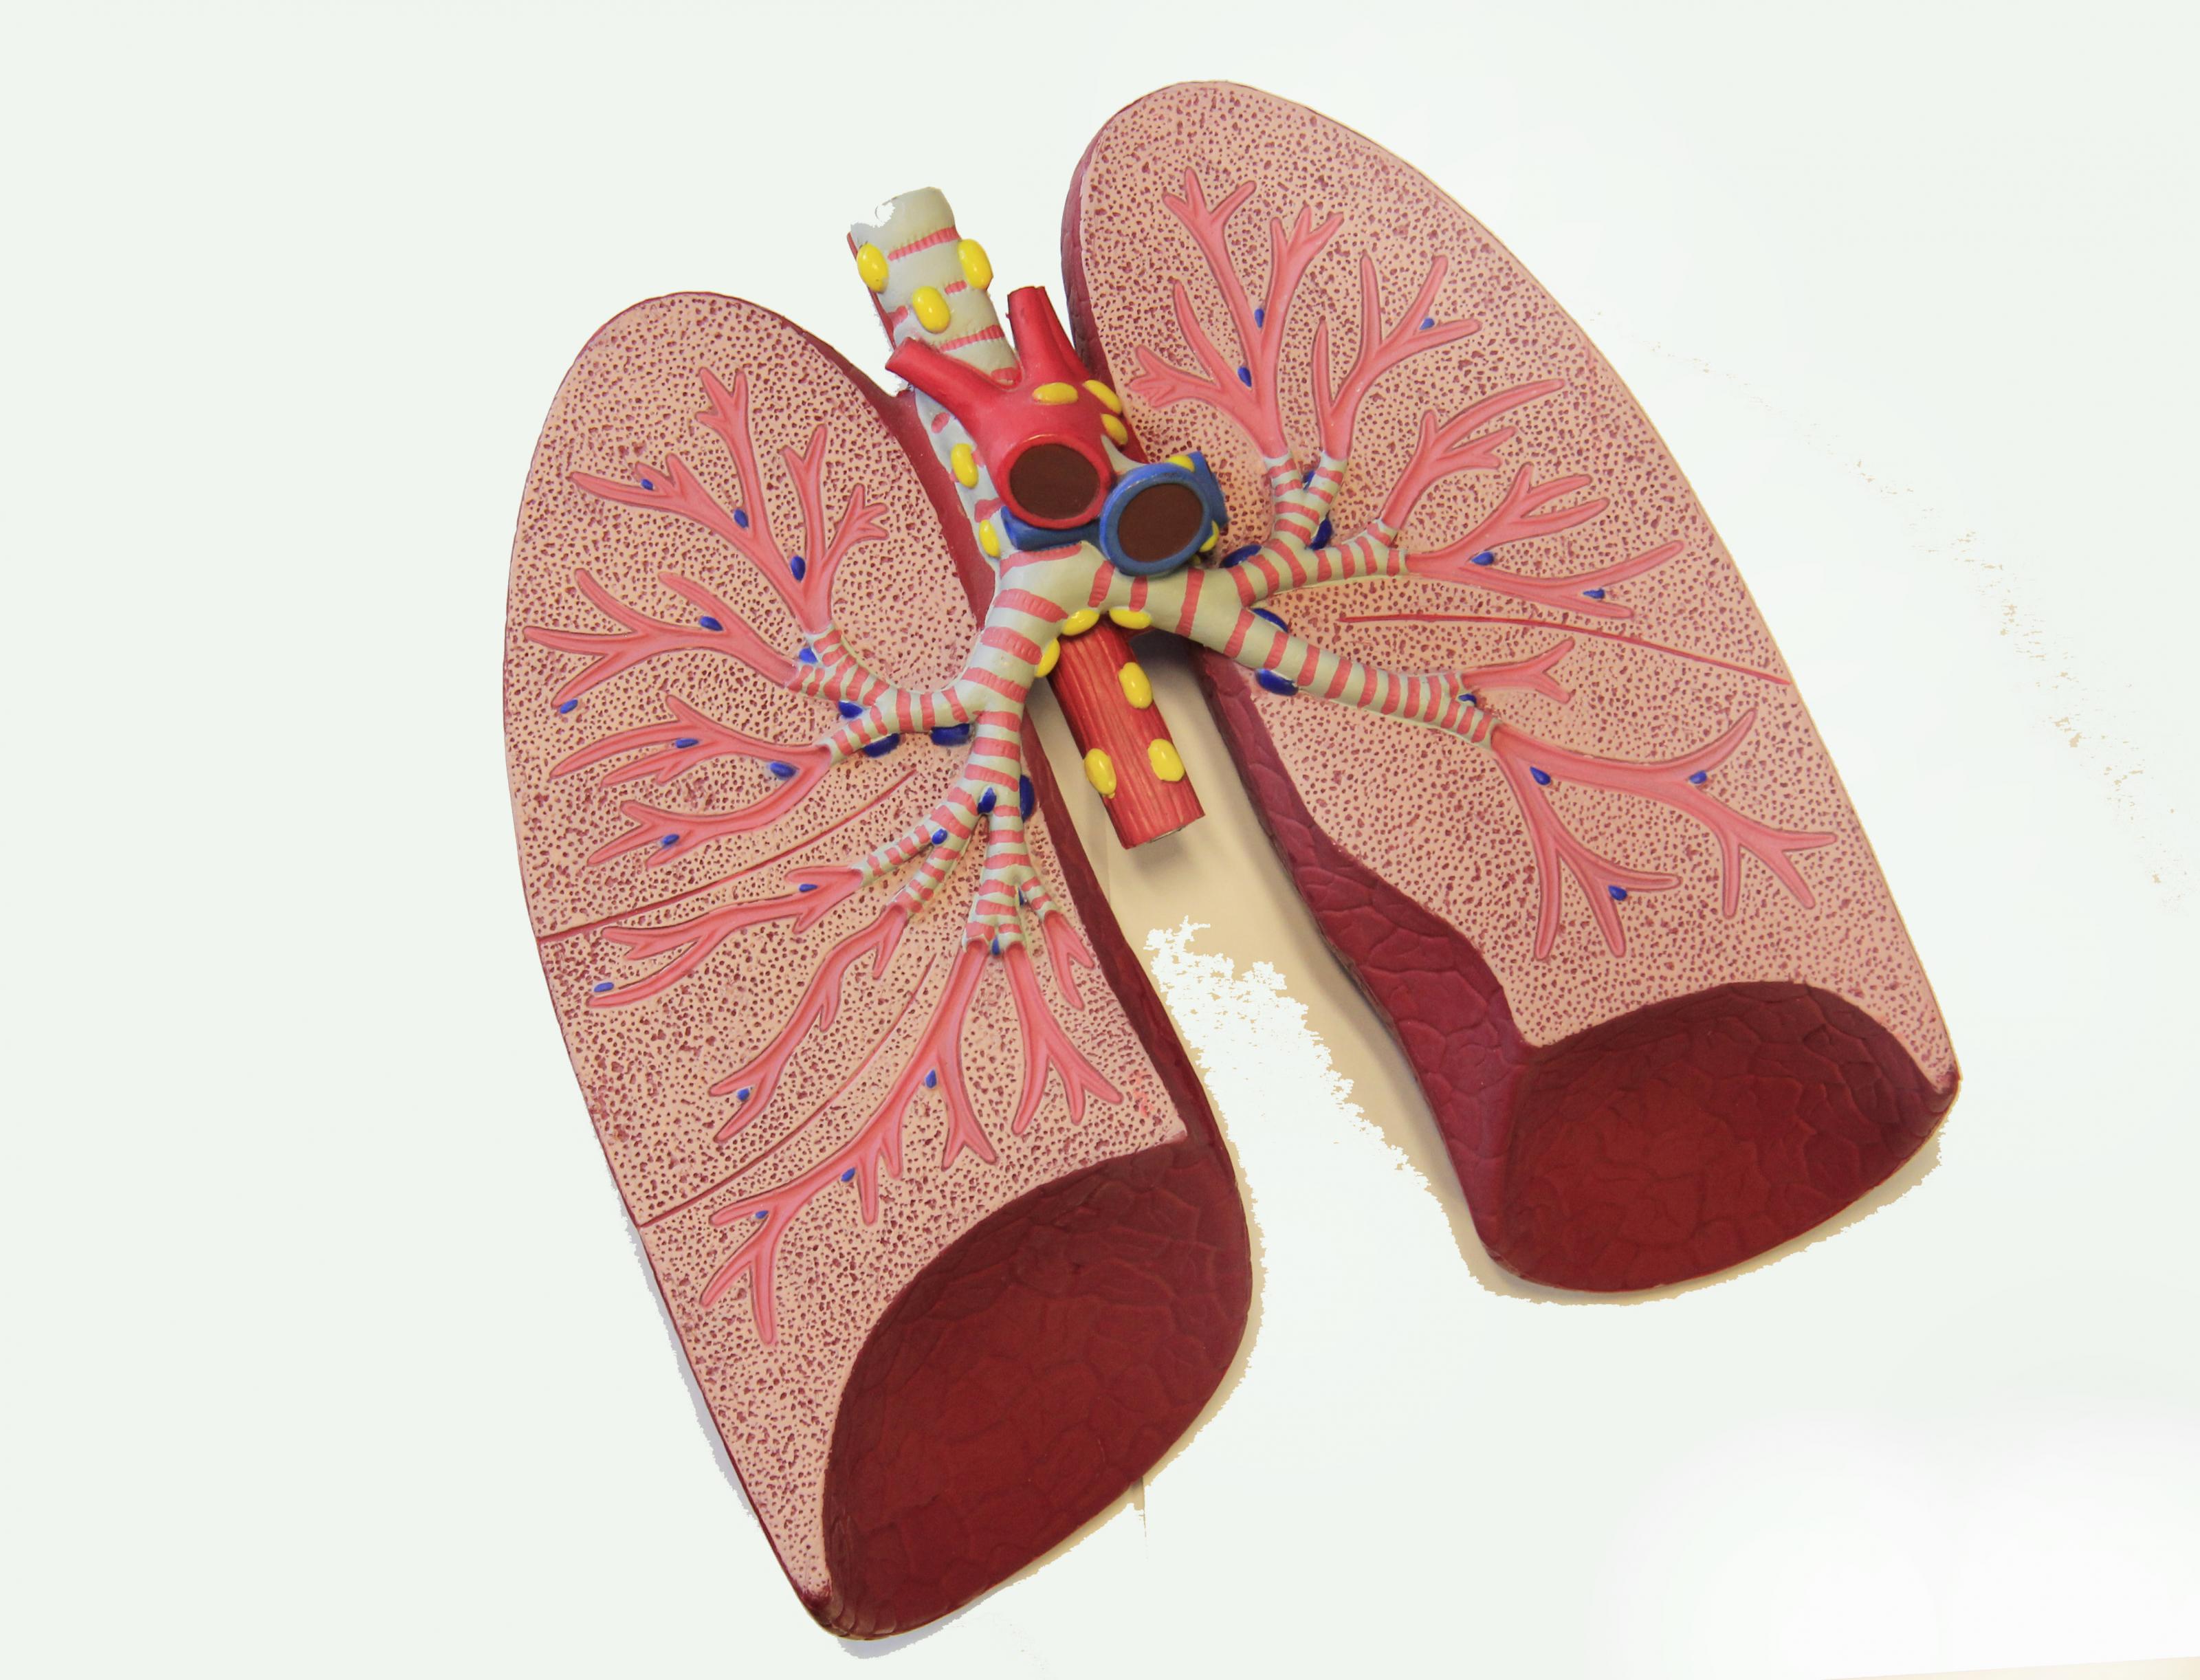 anatomisch model van longen